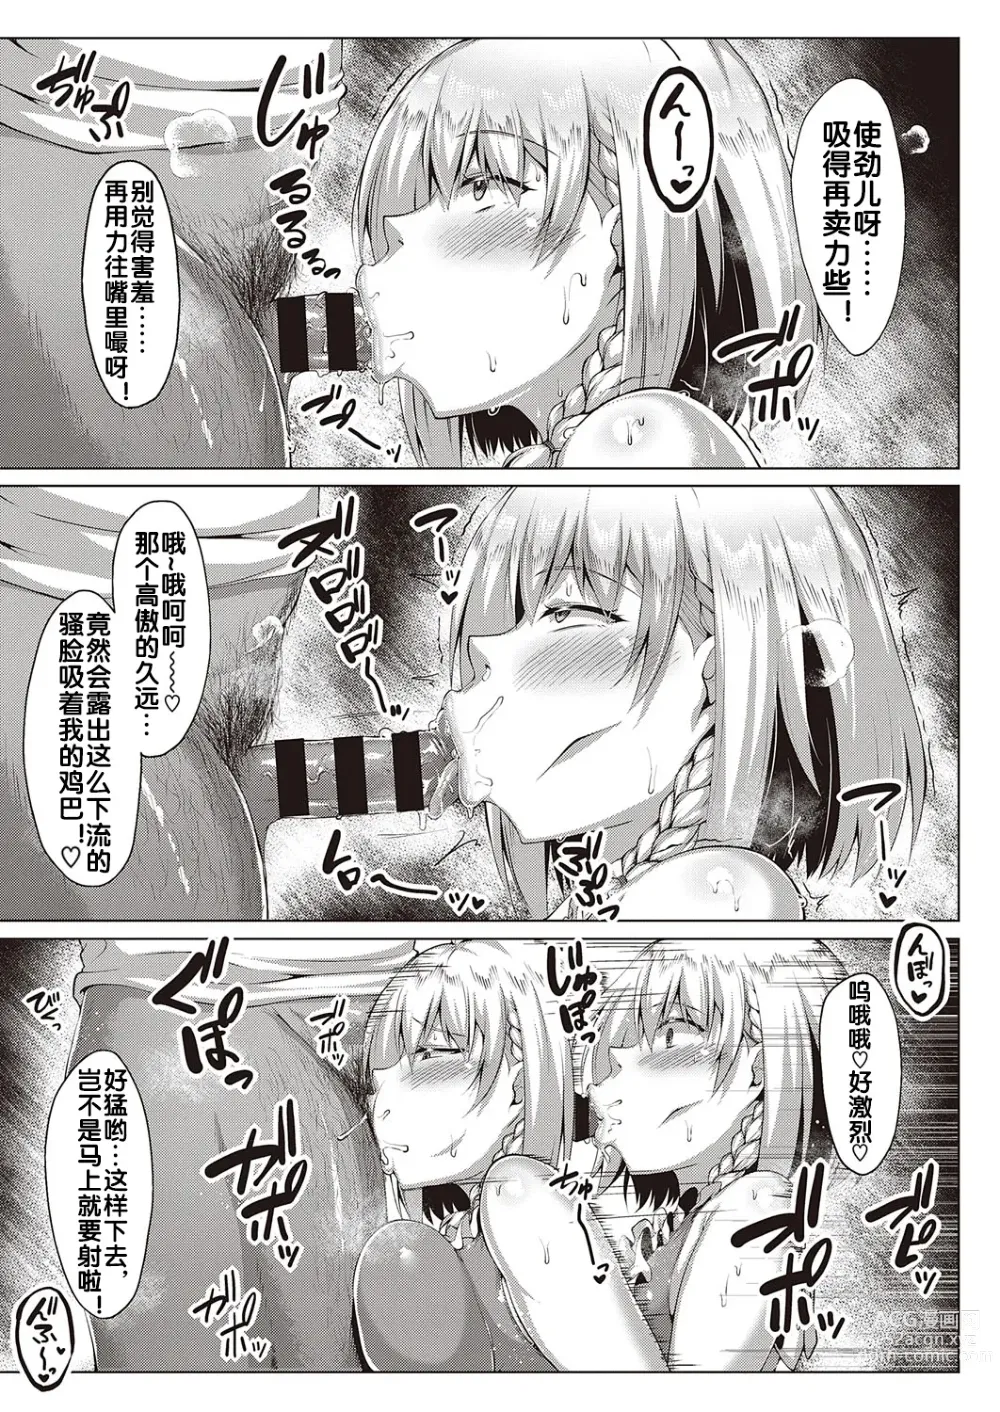 Page 16 of manga Kugutsu Appli